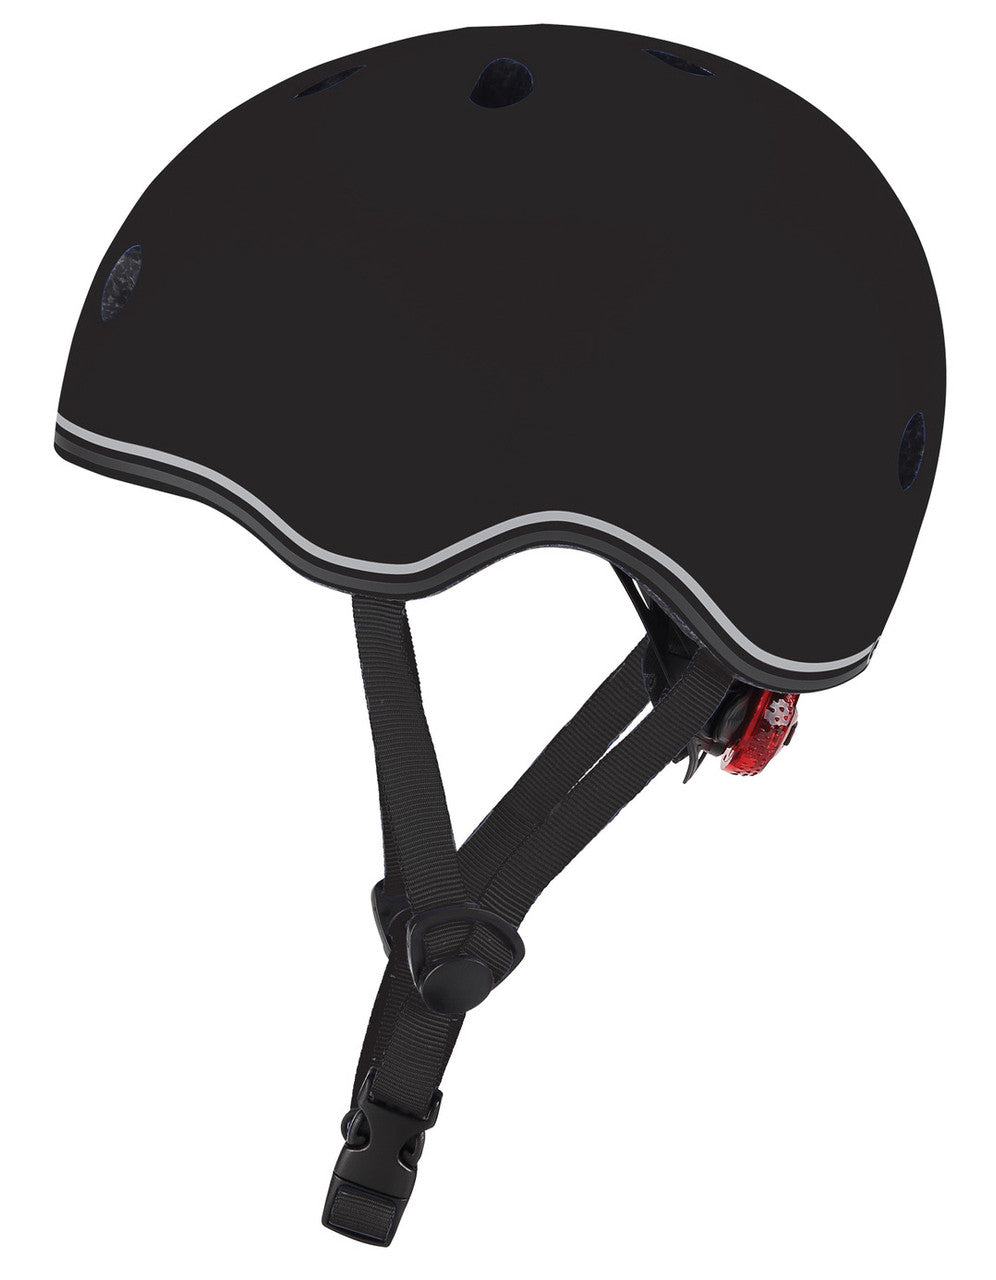 Globber Helmet - Black - Small (51-55cm)